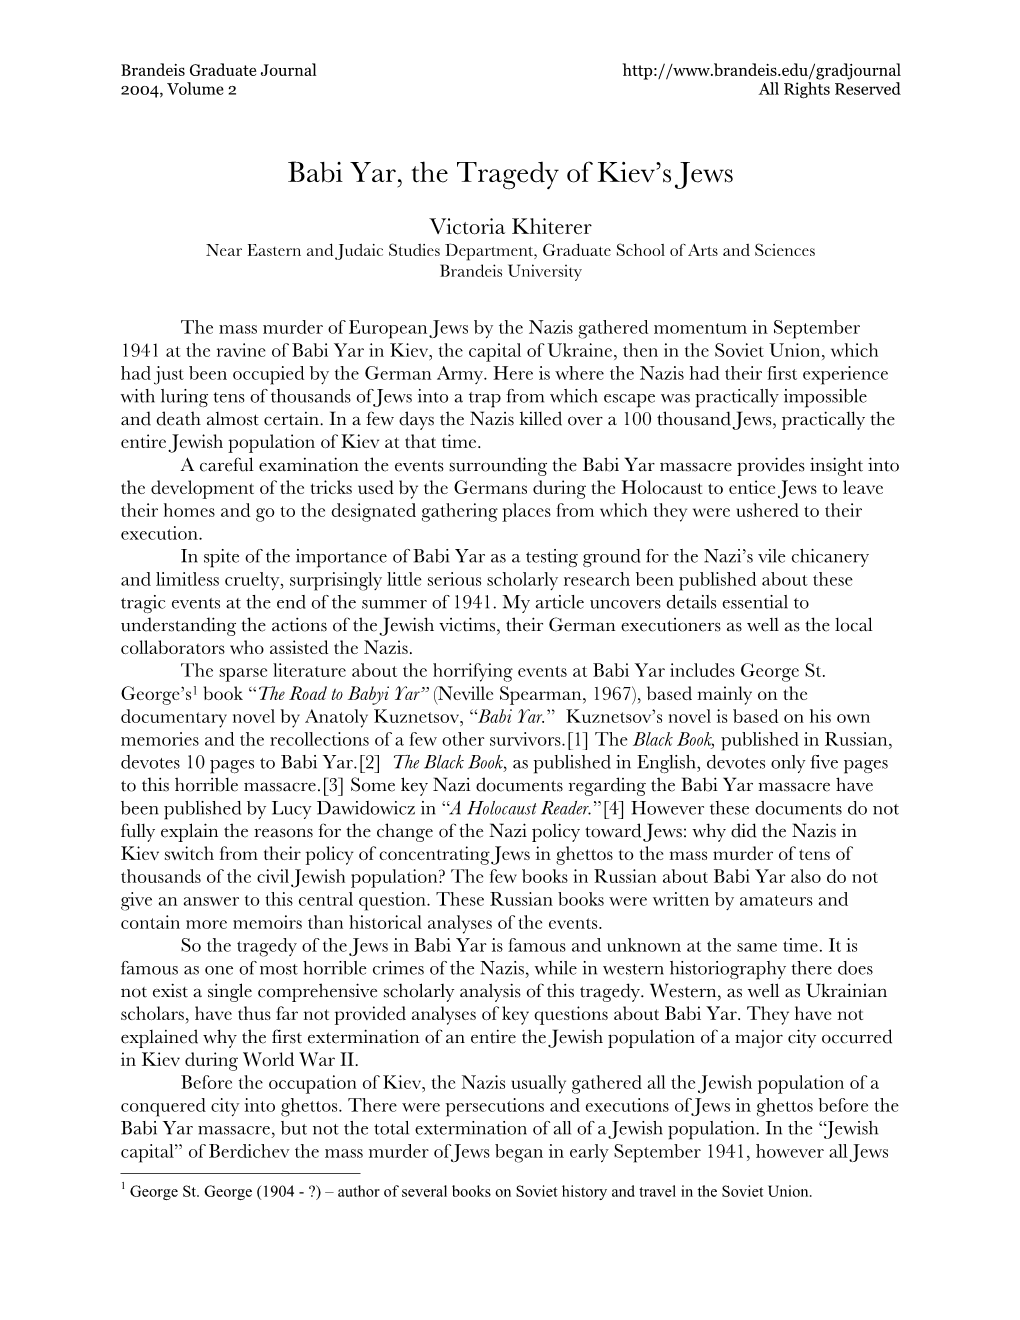 Babi Yar, the Tragedy of Kiev's Jews